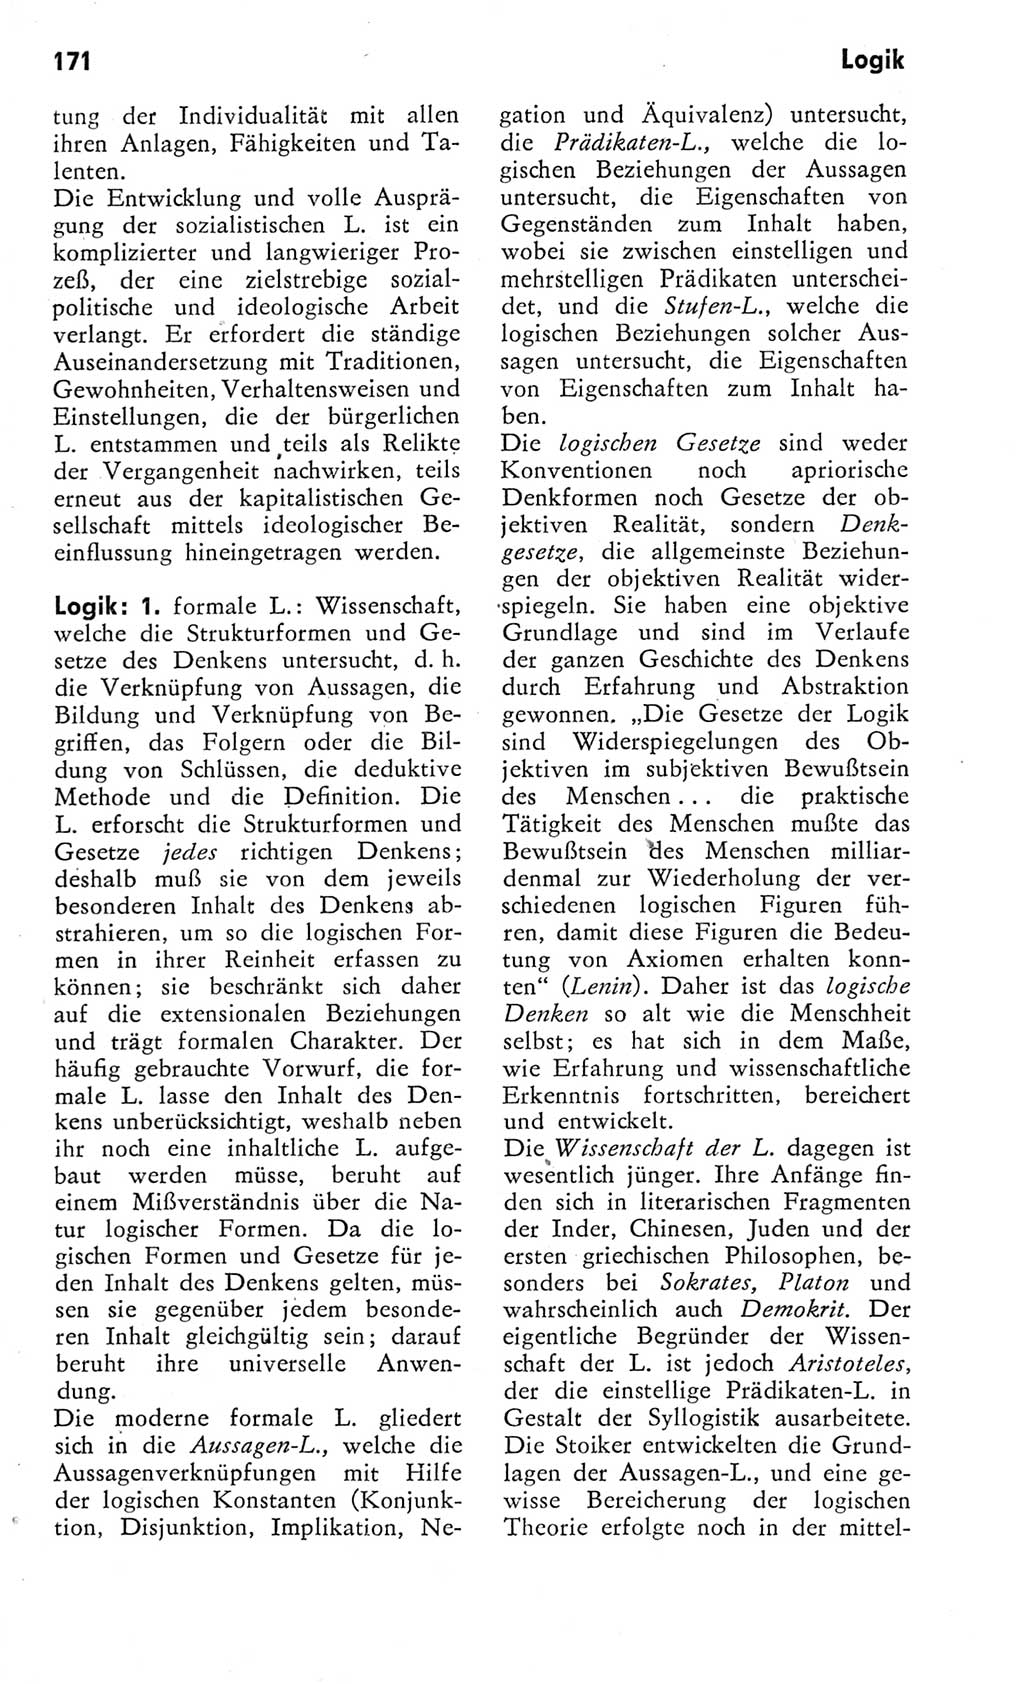 Kleines Wörterbuch der marxistisch-leninistischen Philosophie [Deutsche Demokratische Republik (DDR)] 1975, Seite 171 (Kl. Wb. ML Phil. DDR 1975, S. 171)